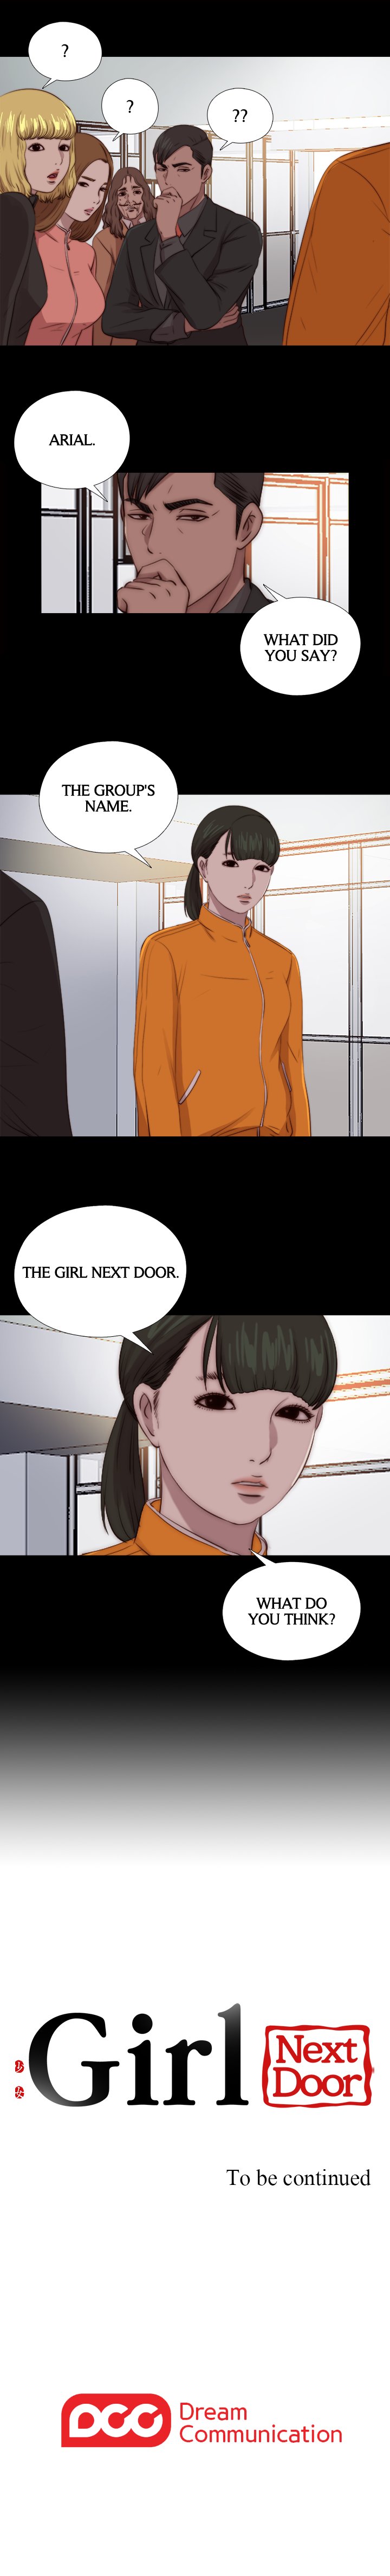 The Girl Next Door image